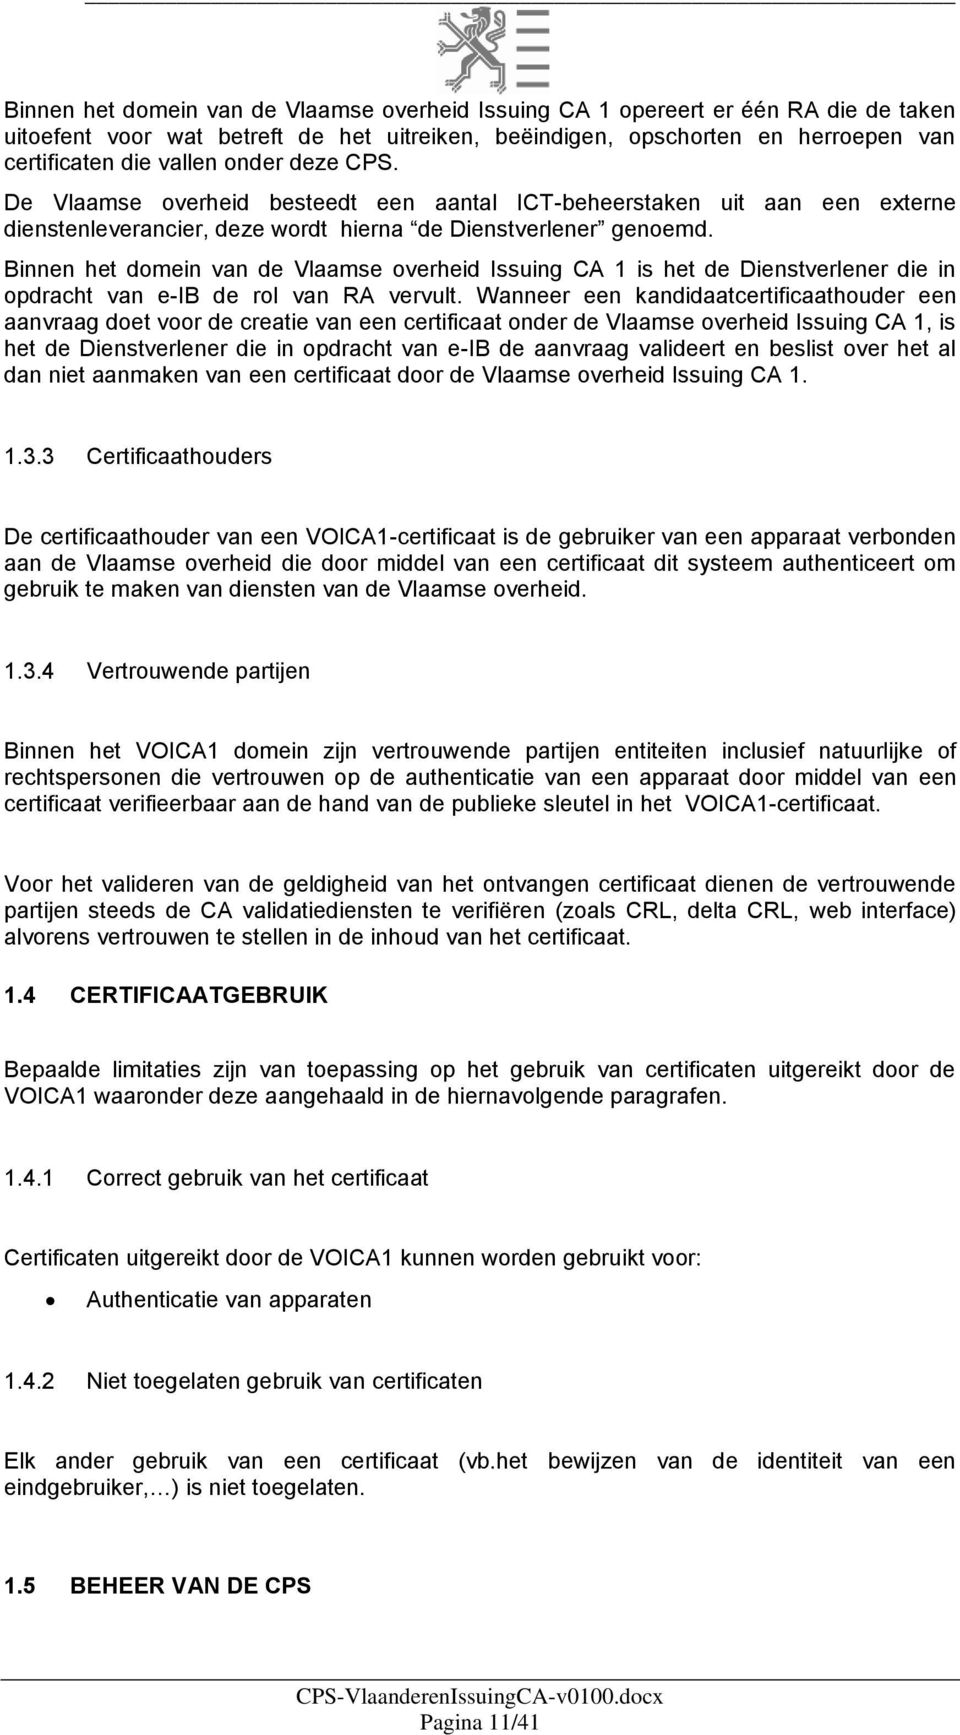 Binnen het domein van de Vlaamse overheid Issuing CA 1 is het de Dienstverlener die in opdracht van e-ib de rol van RA vervult.